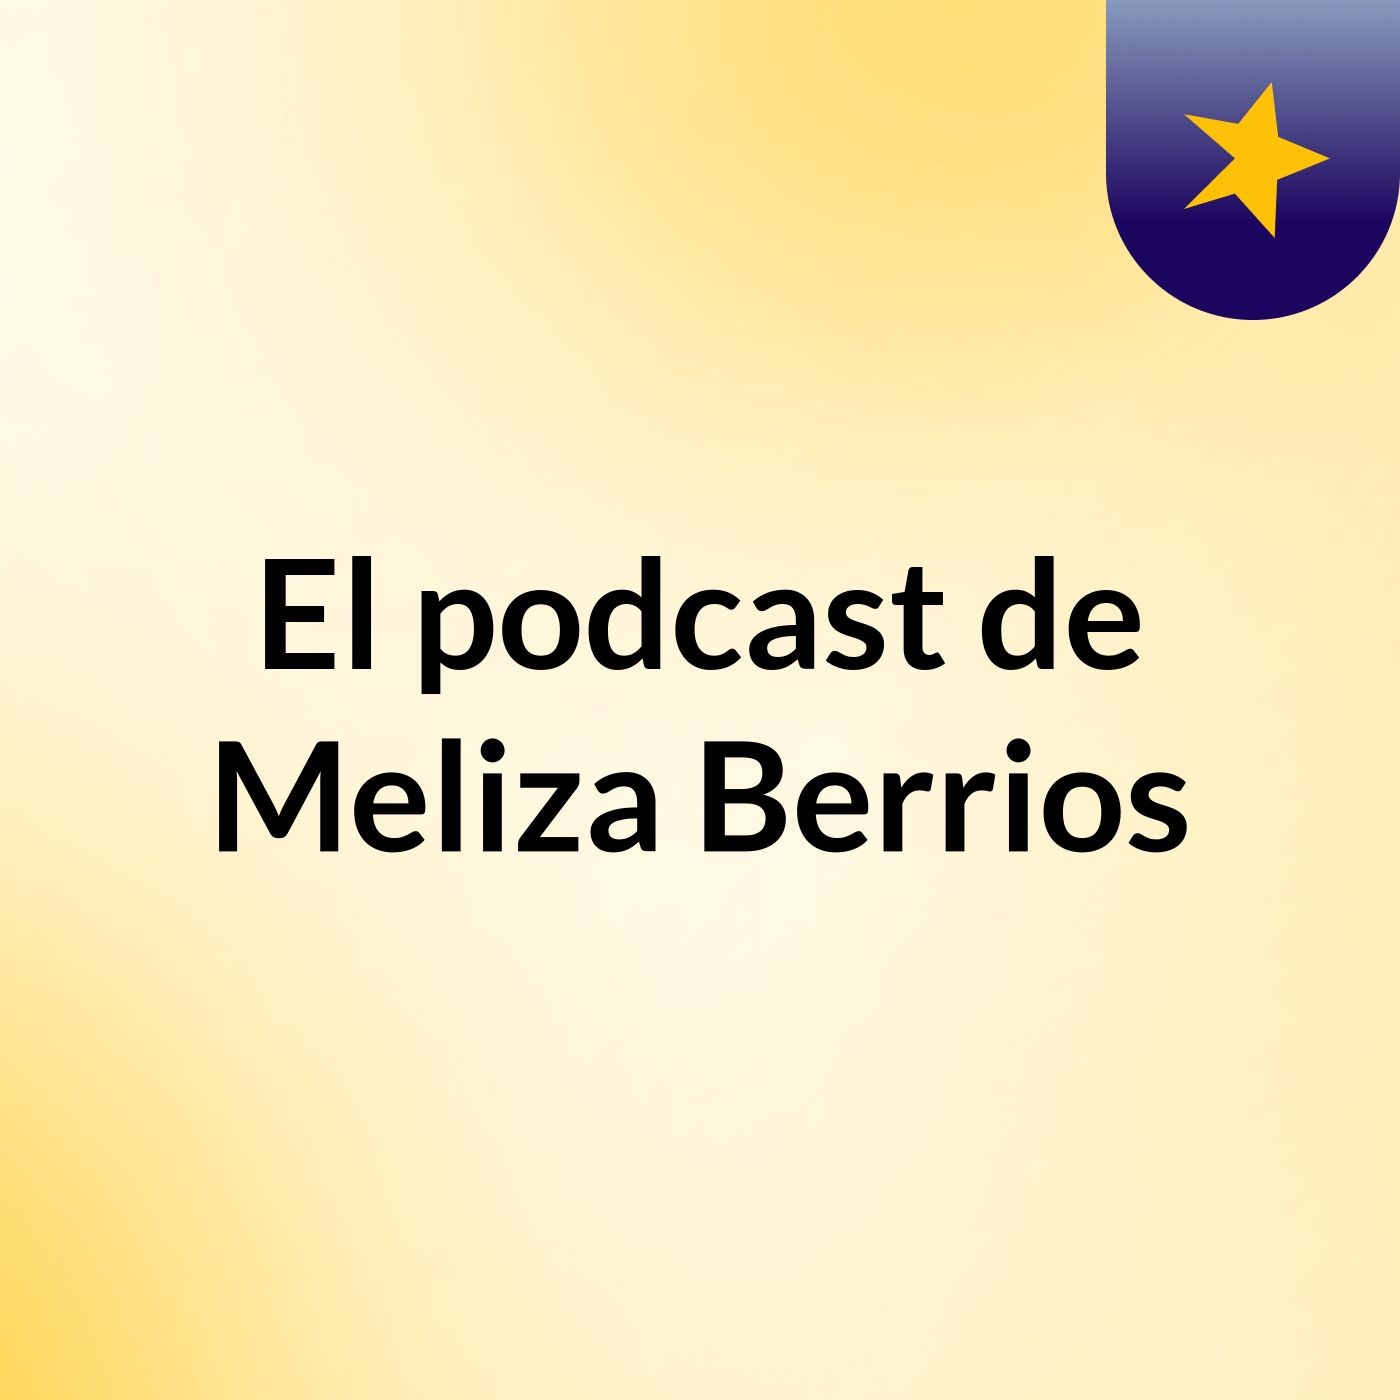 El podcast de Meliza Berrios